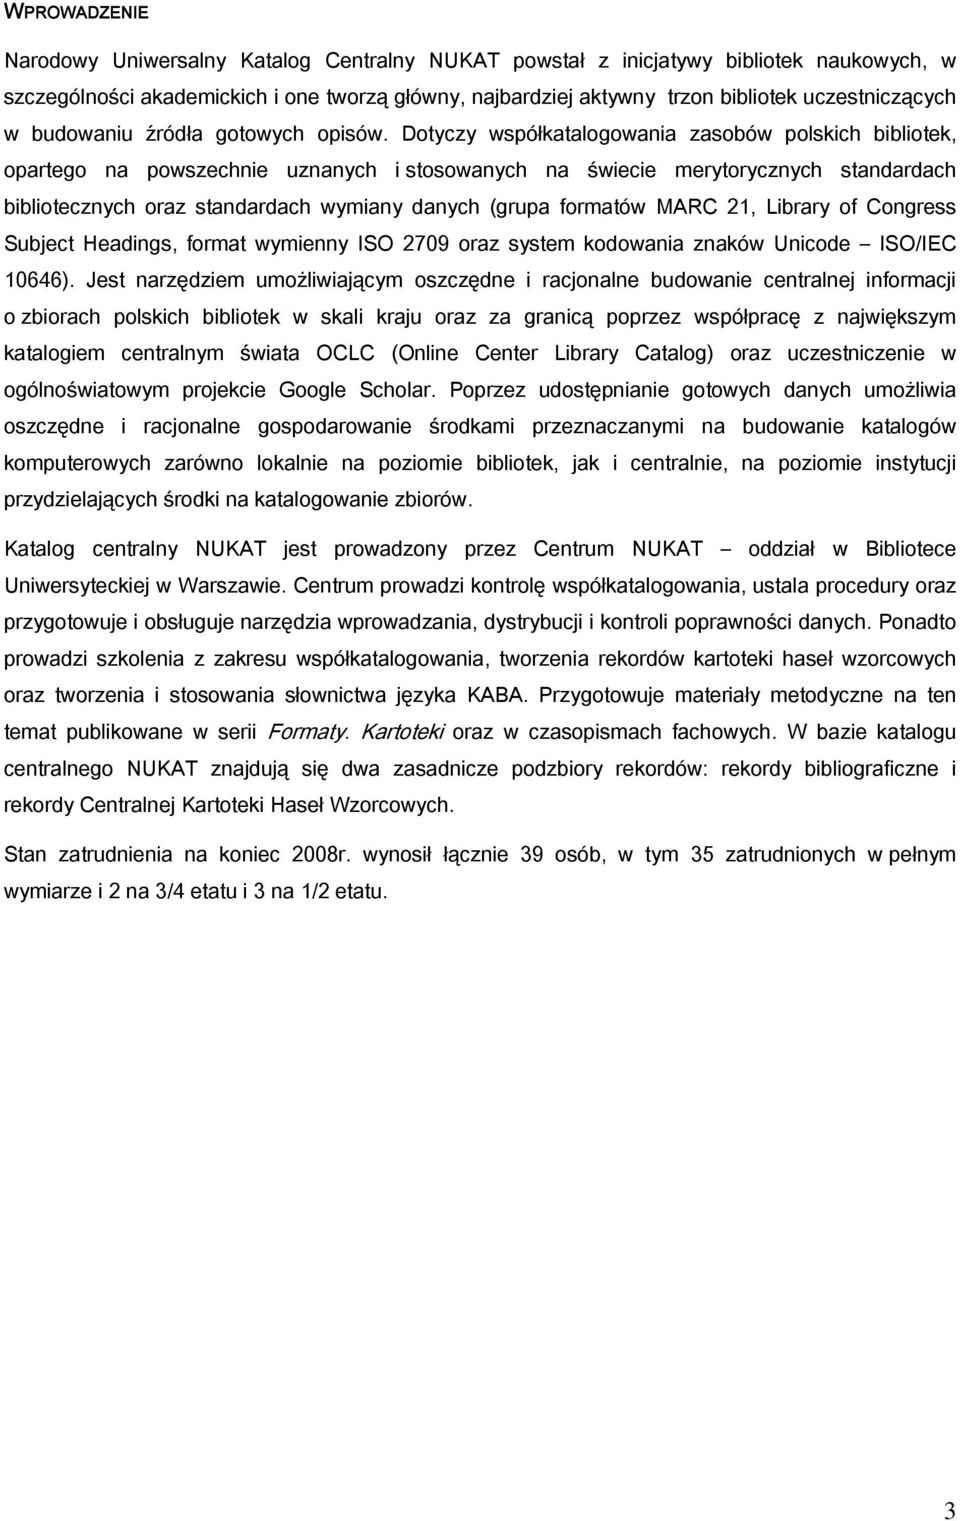 Dotyczy współkatalogowania zasobów polskich bibliotek, opartego na powszechnie uznanych i stosowanych na świecie merytorycznych standardach bibliotecznych oraz standardach wymiany danych (grupa